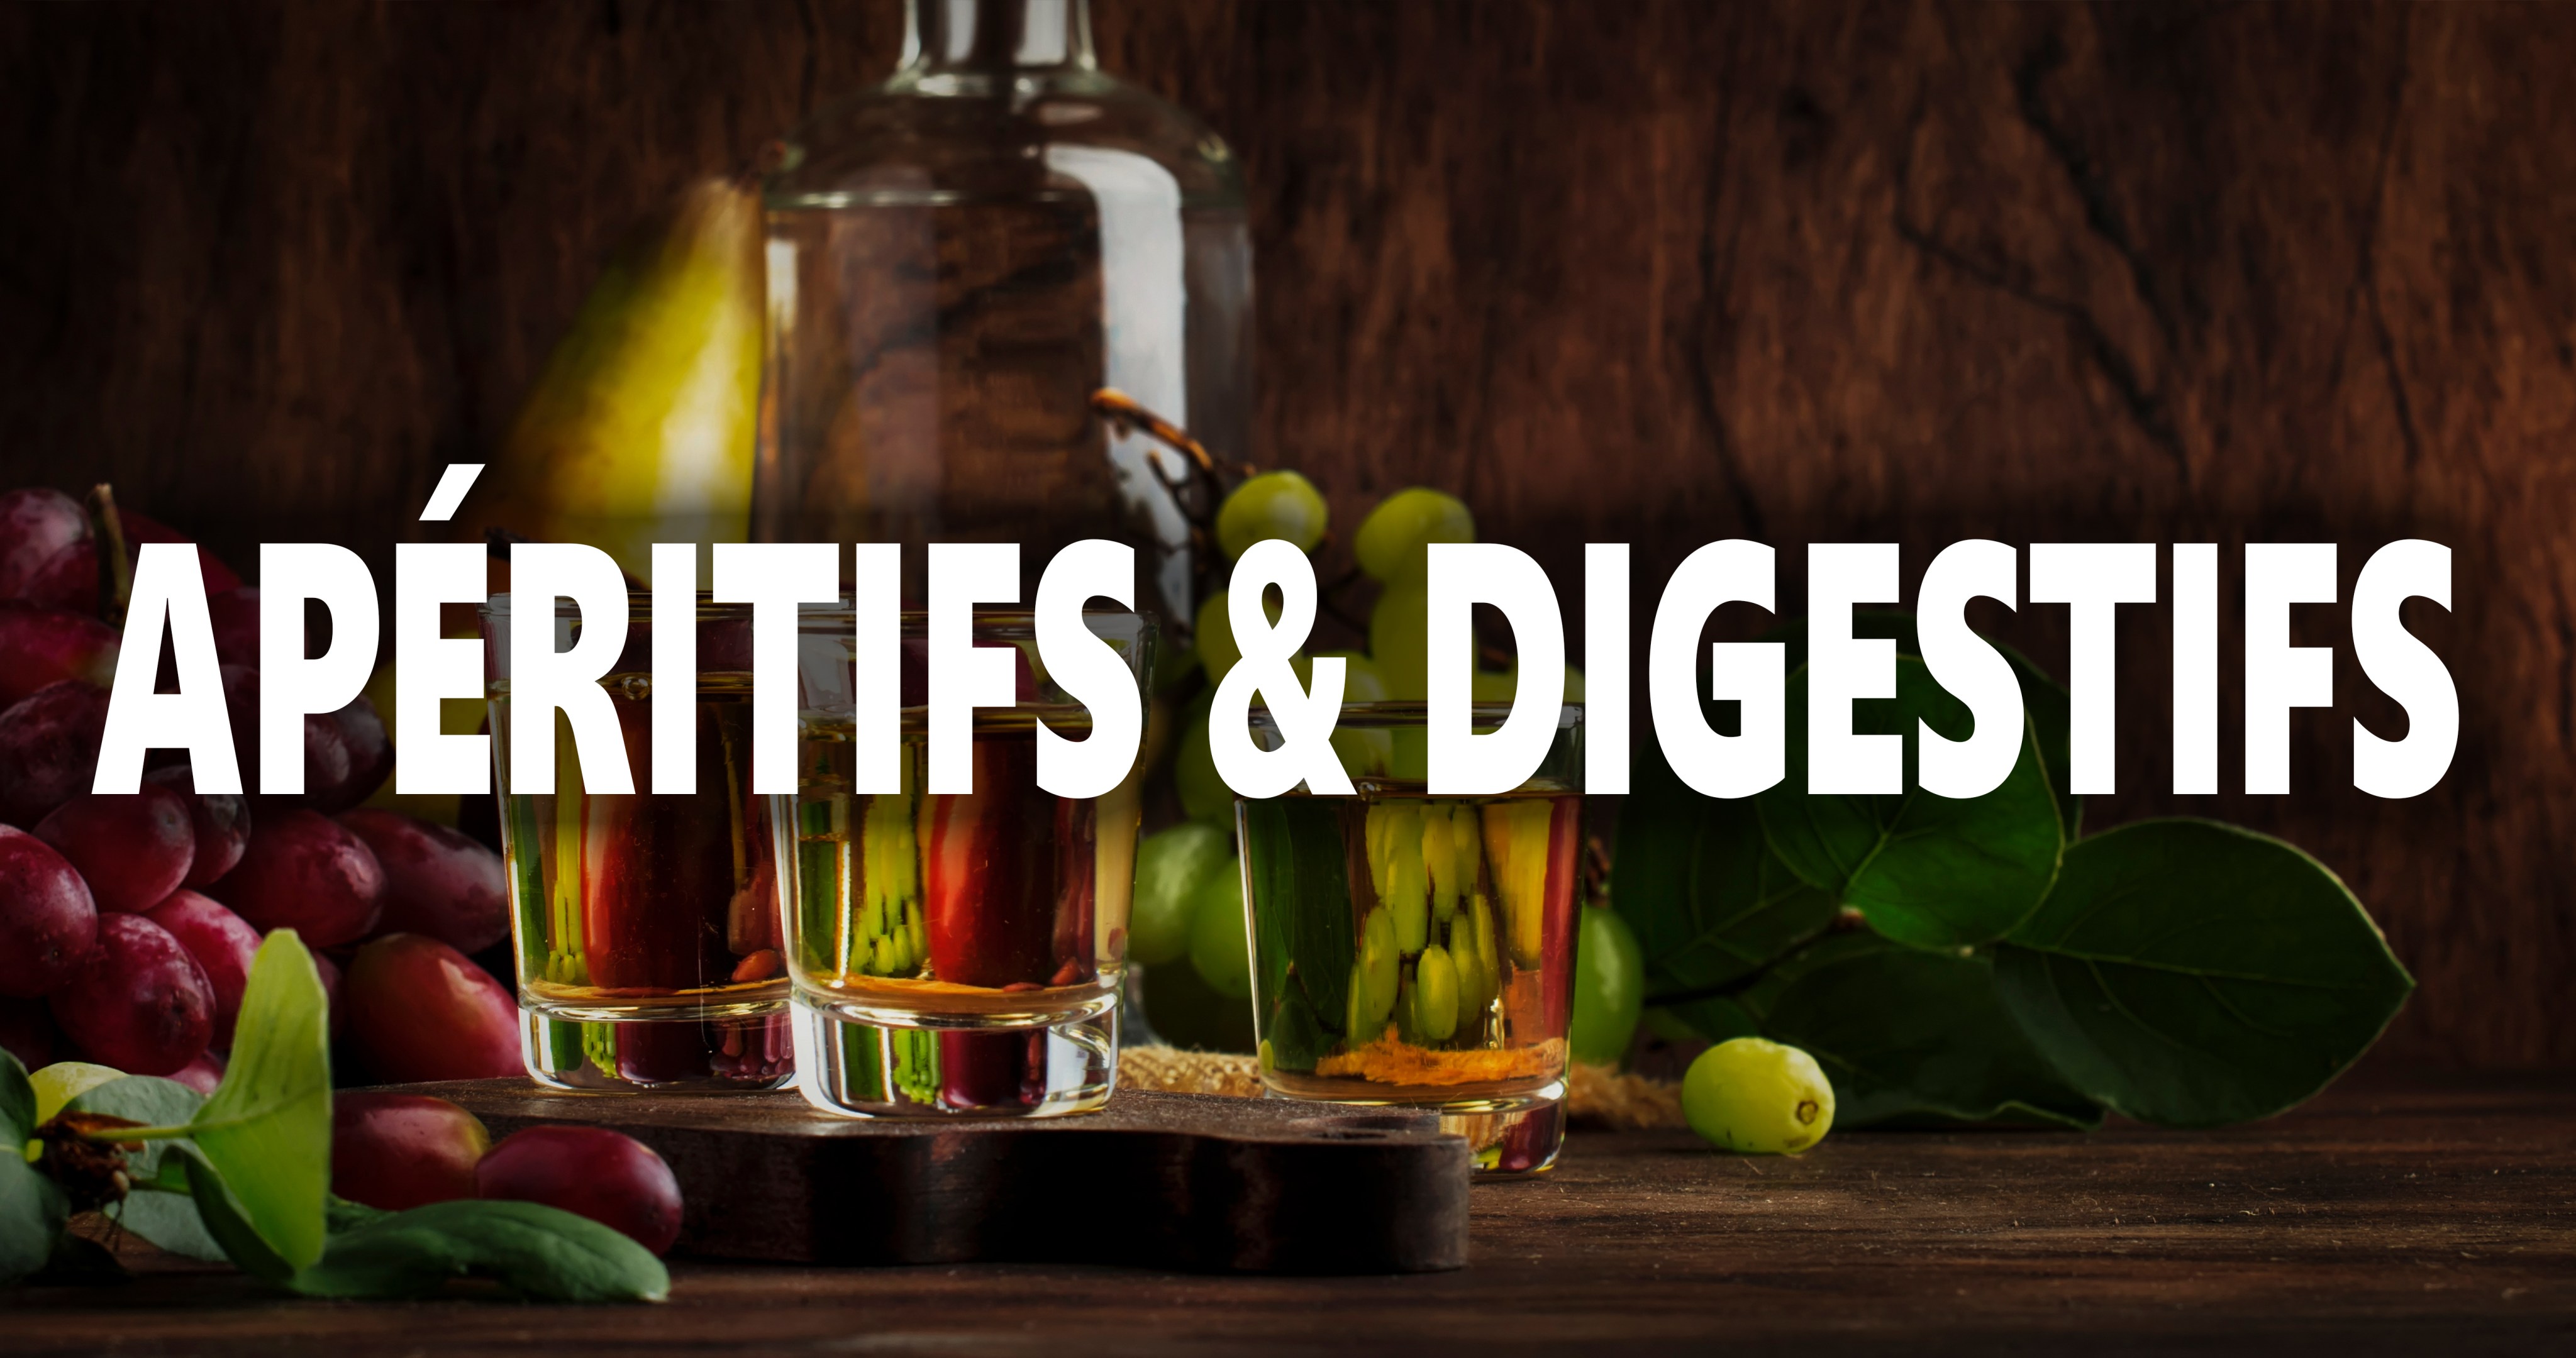 What are Aperitifs and Digestifs?